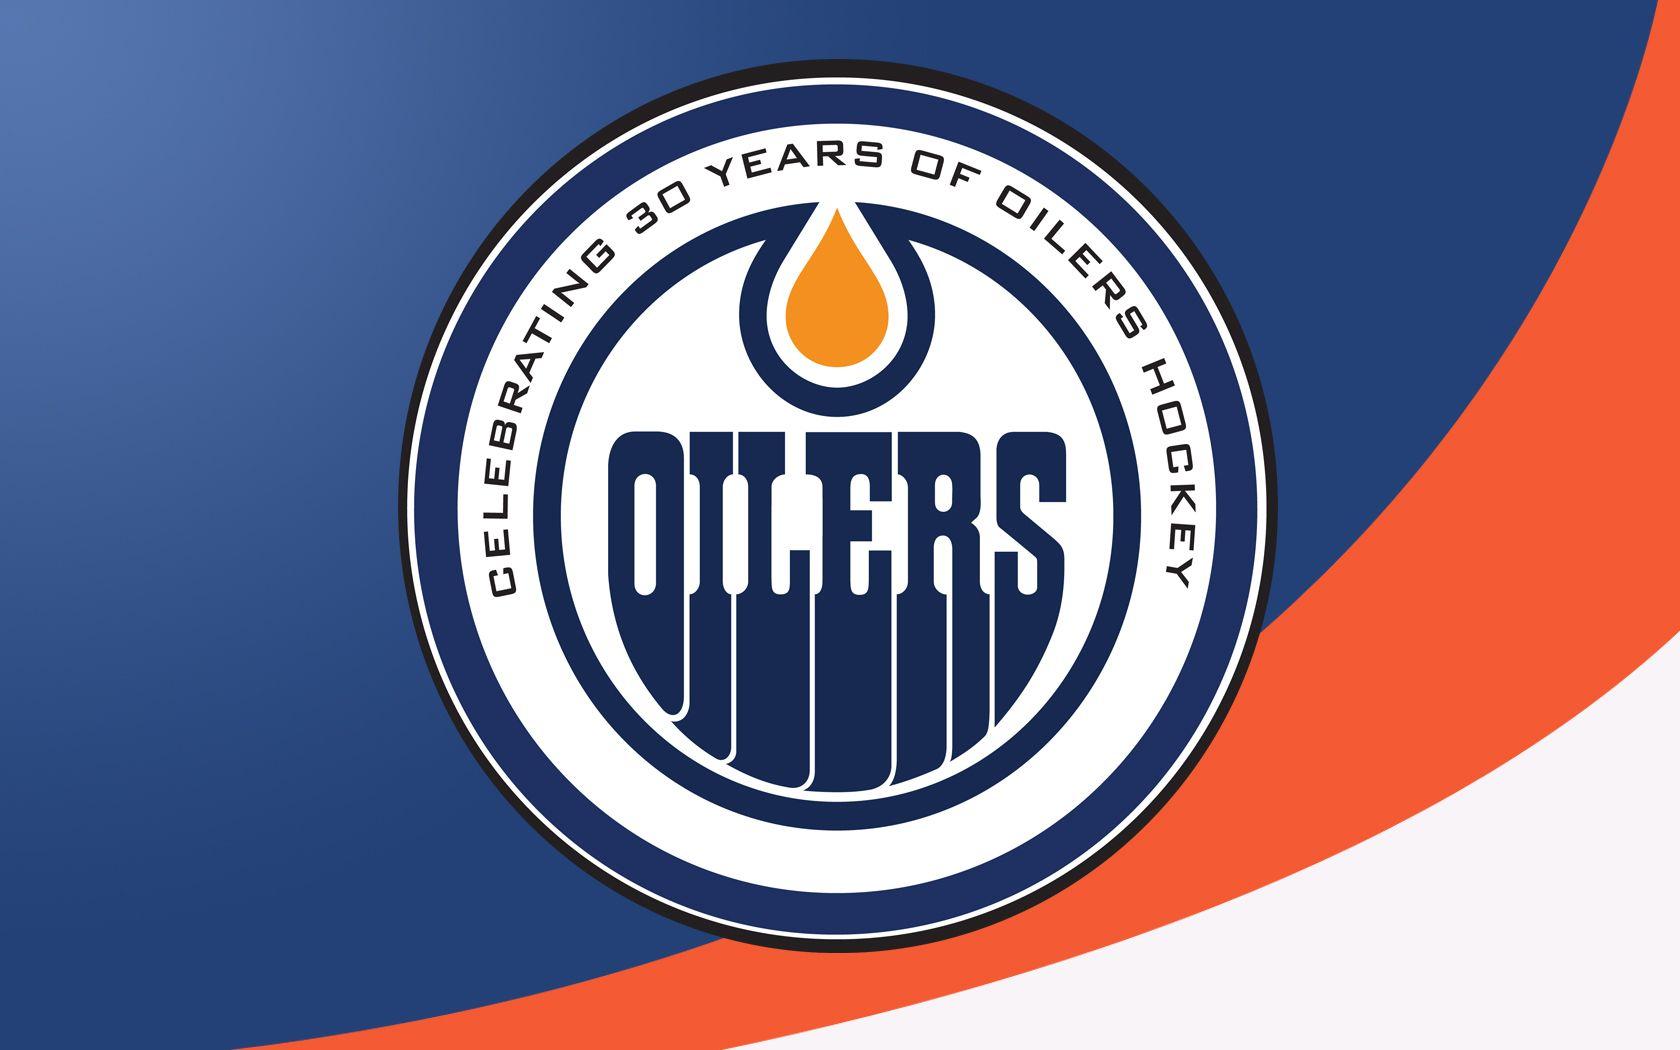 Edmonton Oilers Wallpapers - Top Free Edmonton Oilers Backgrounds ...